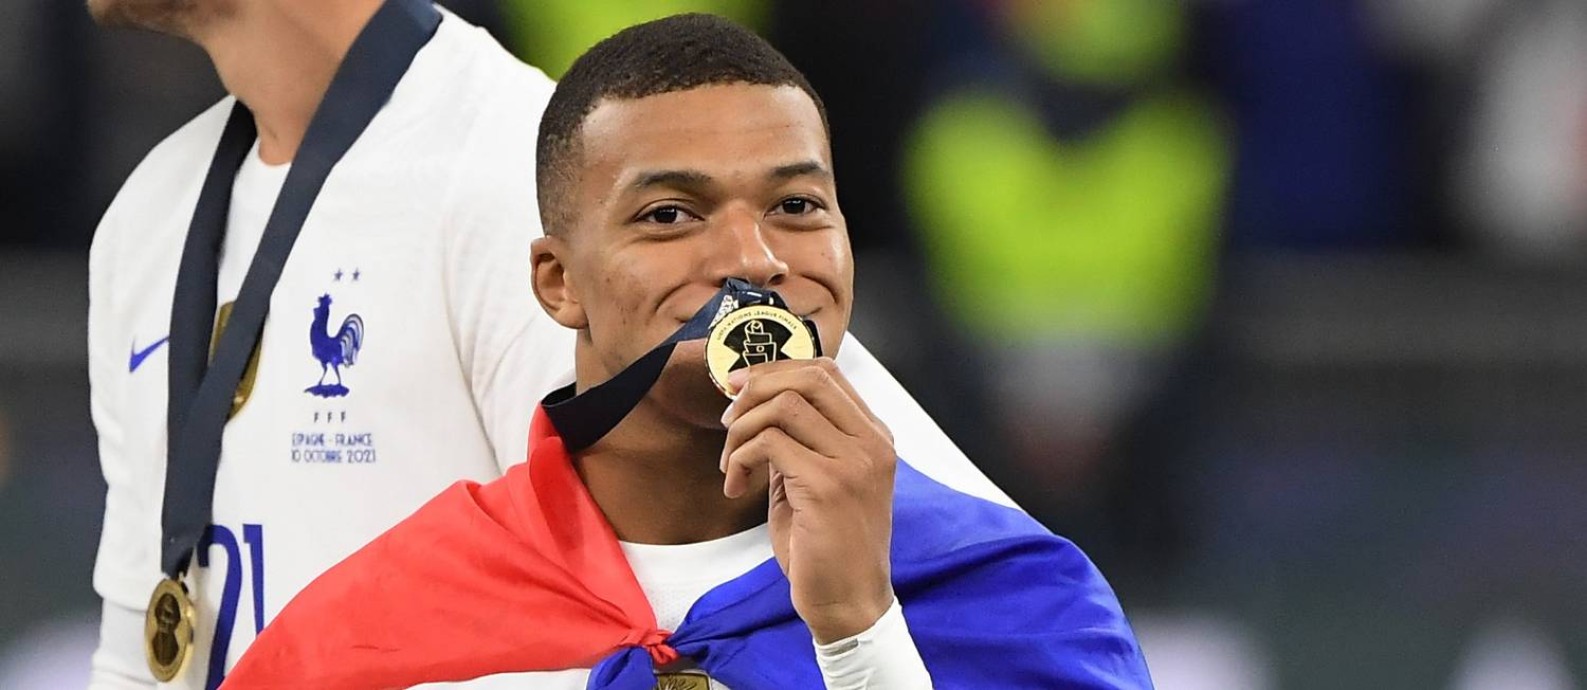 Mbappé com a medalha da Liga das Nações, conquistada pela França Foto: ALBERTO LINGRIA / REUTERS